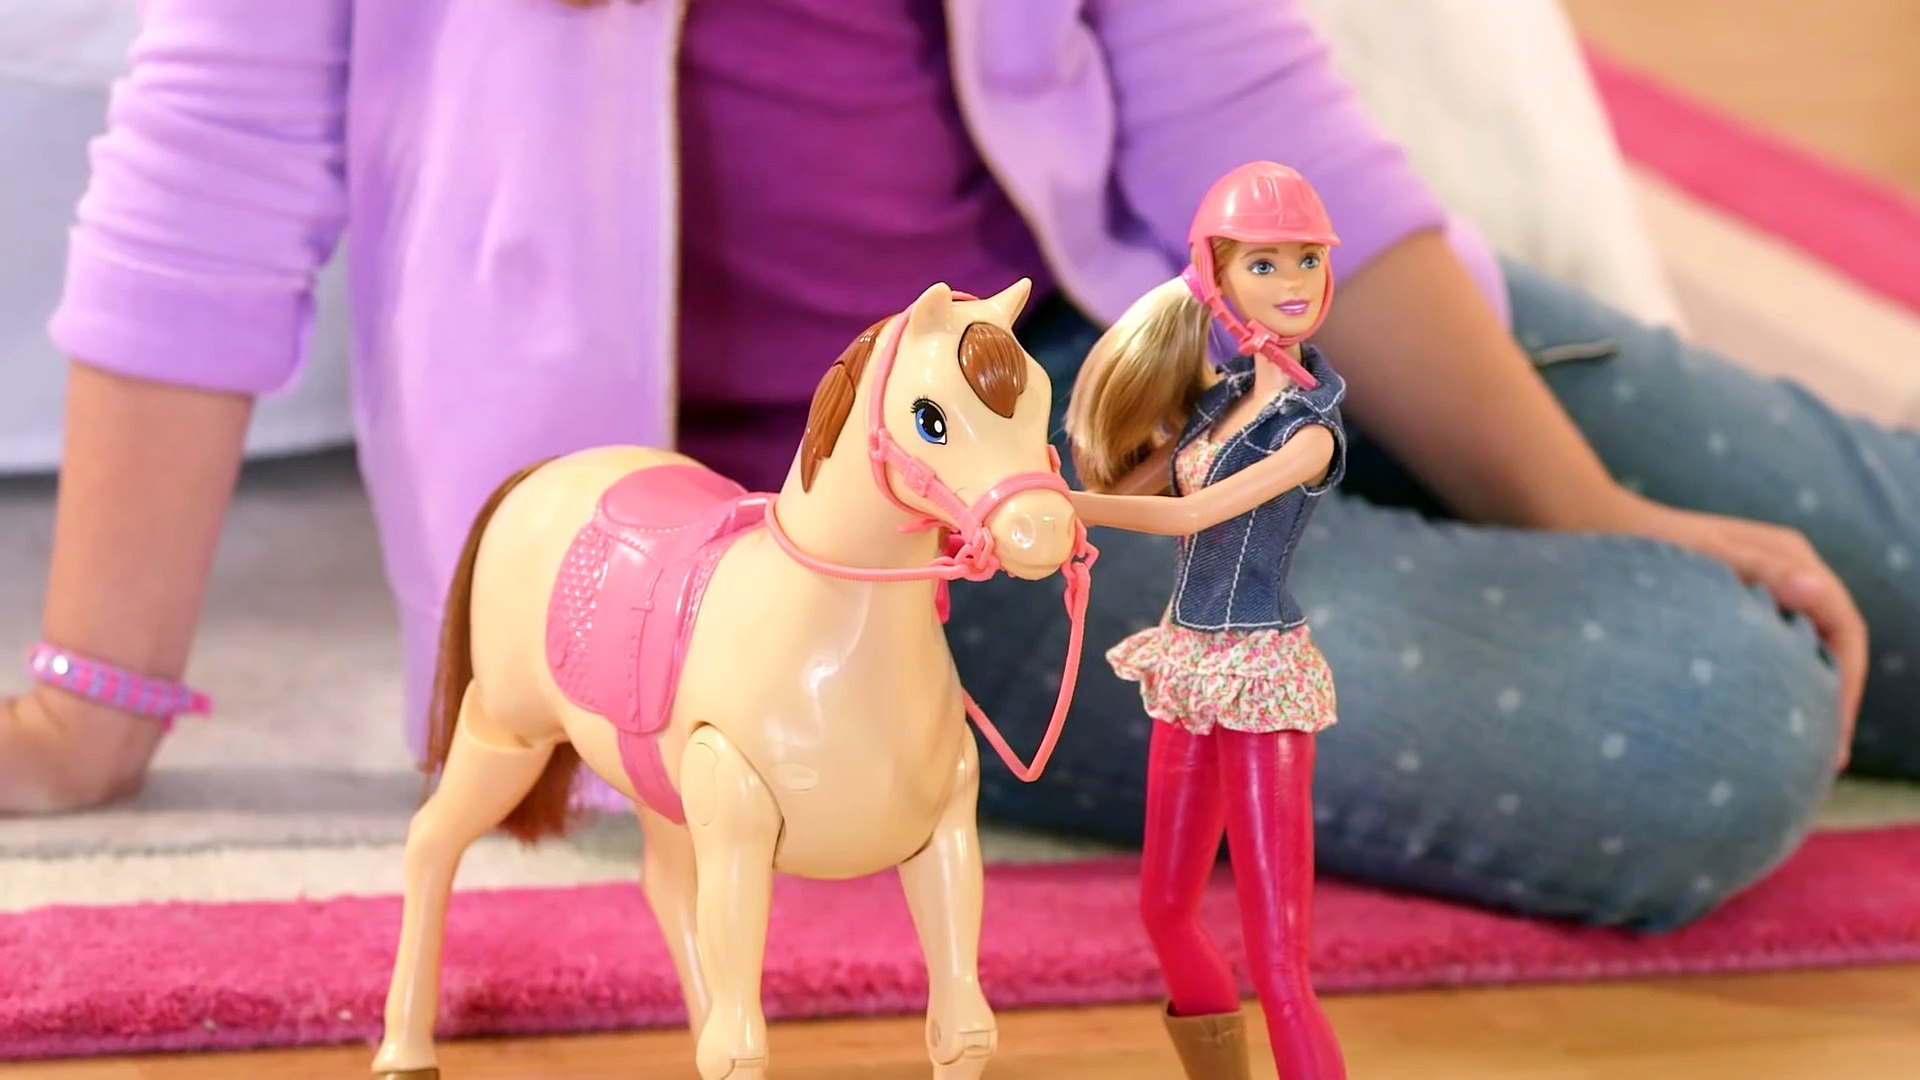 Reitpferd und Barbie Puppe - video Dailymotion